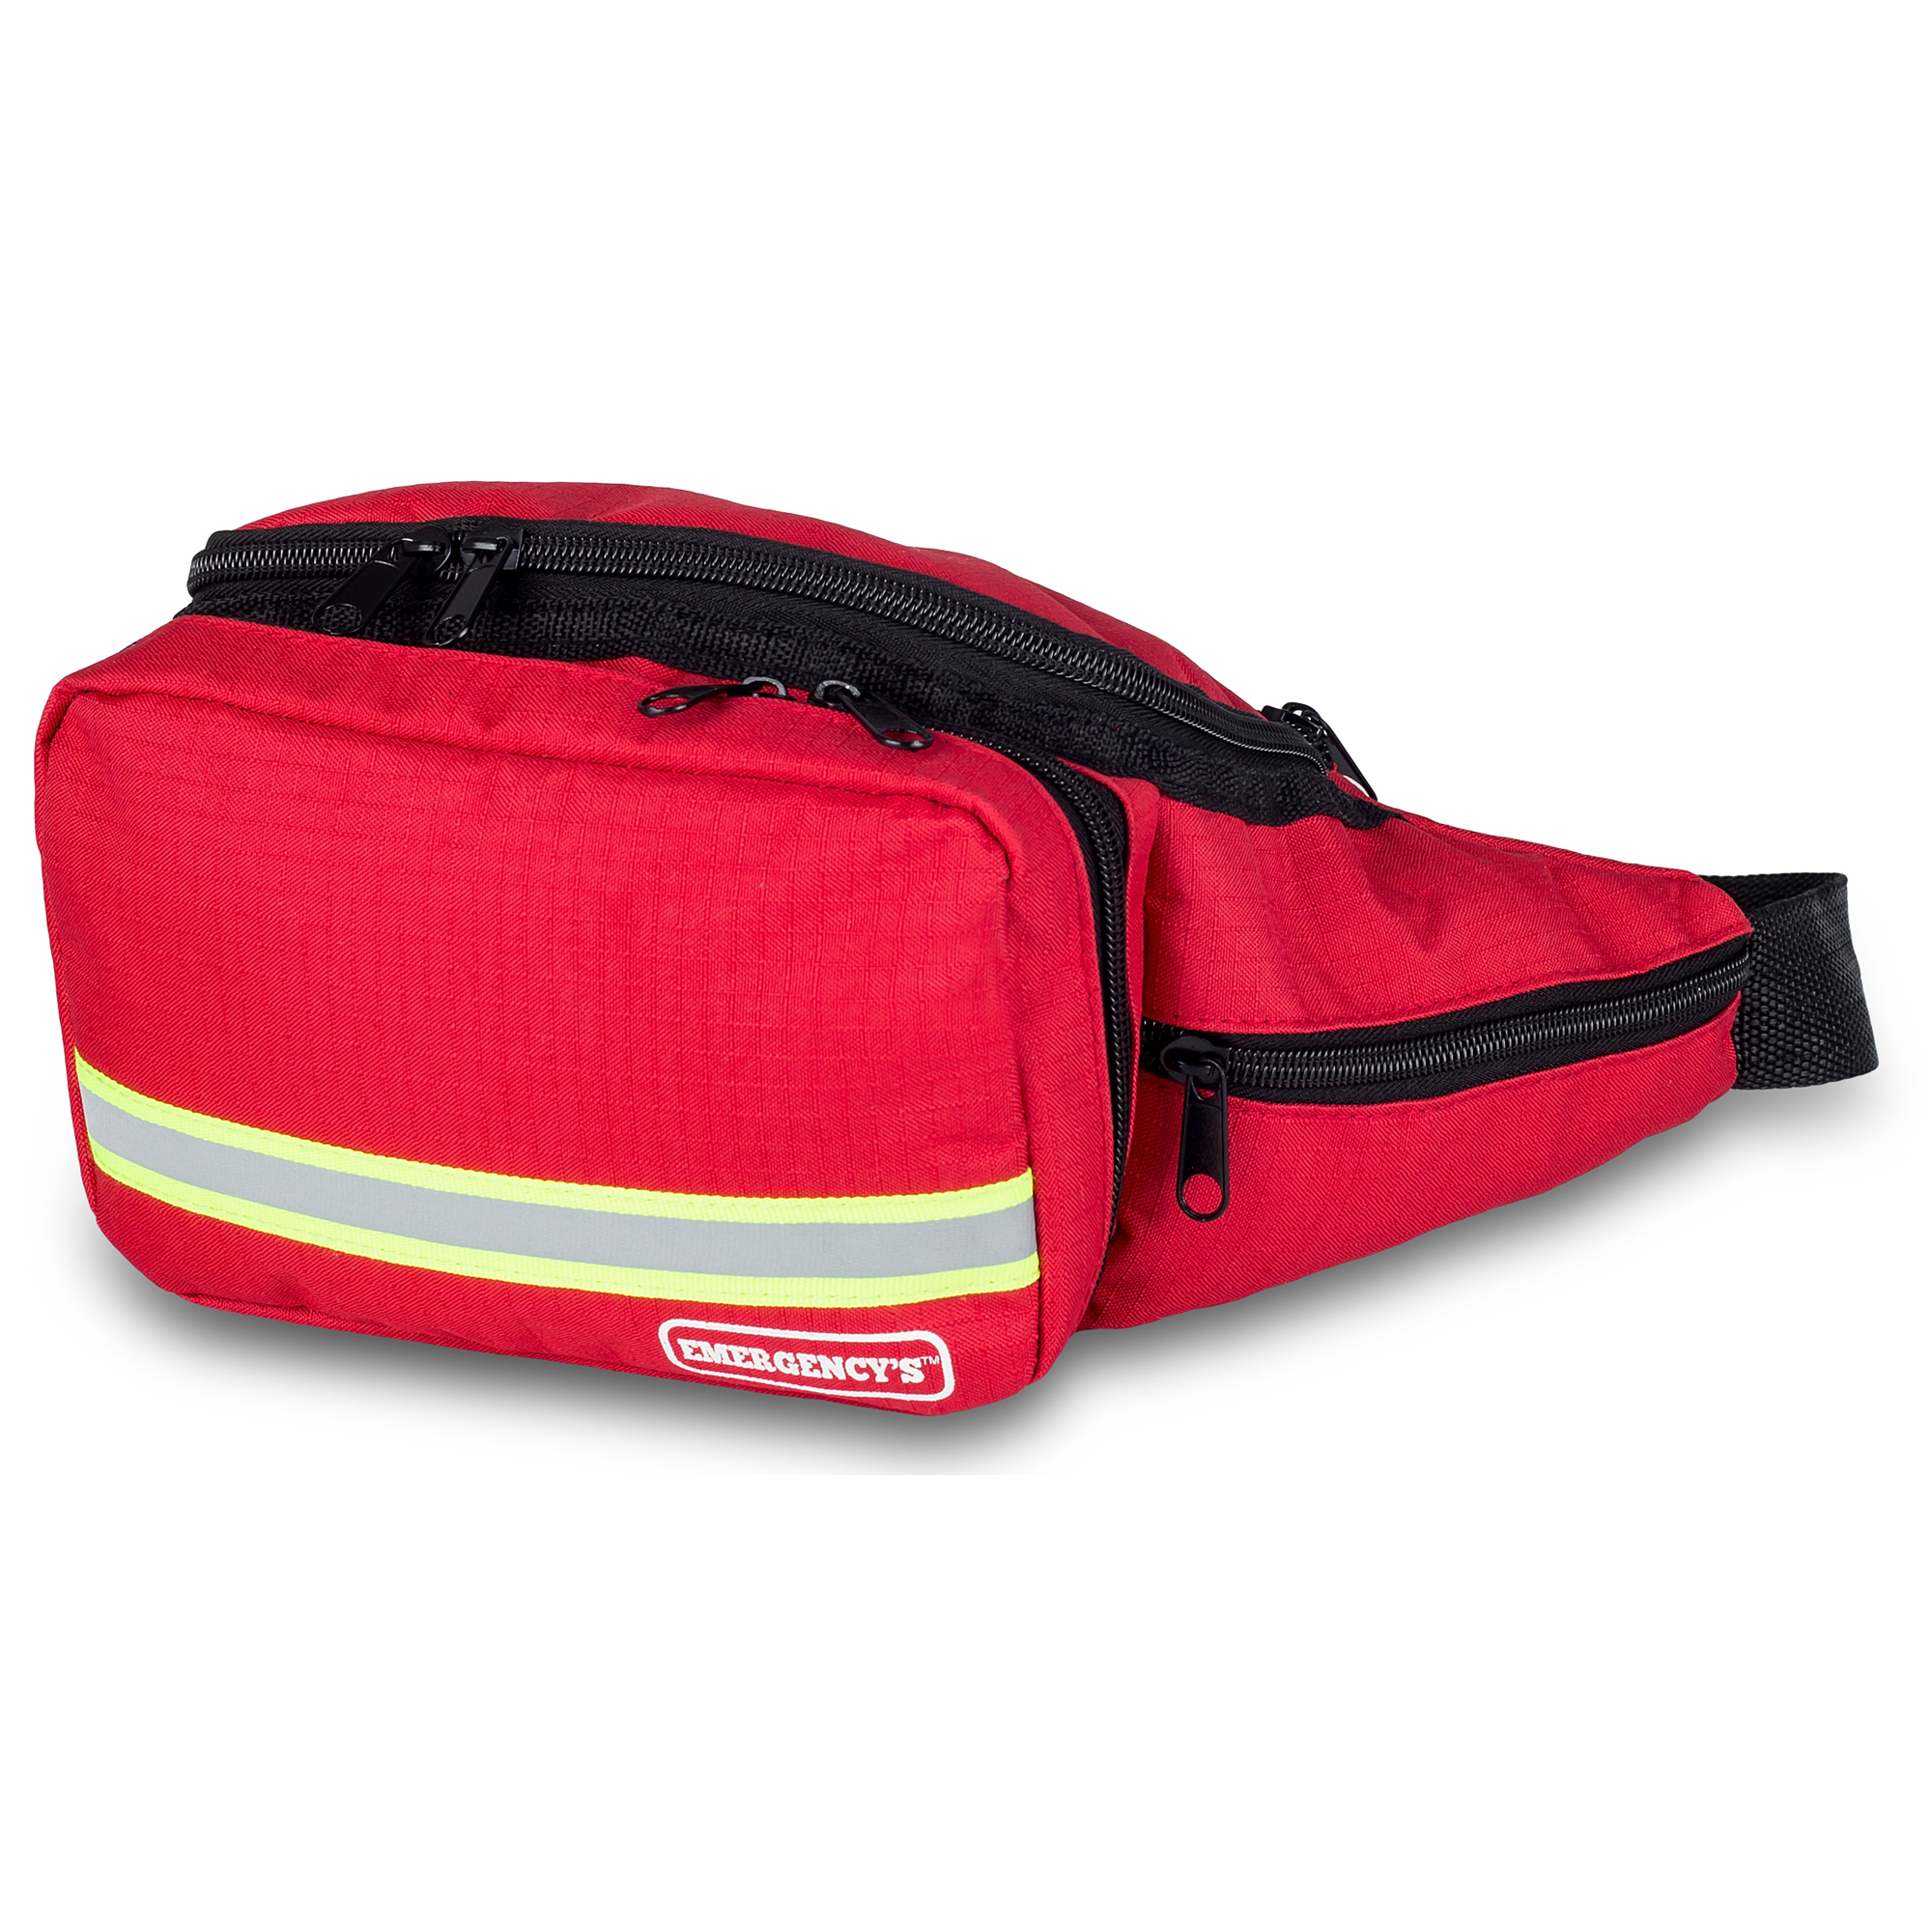 Elite Bags MARSUPIO Erste-Hilfe-Hüfttasche Rot 19 x 13 x 19 cm